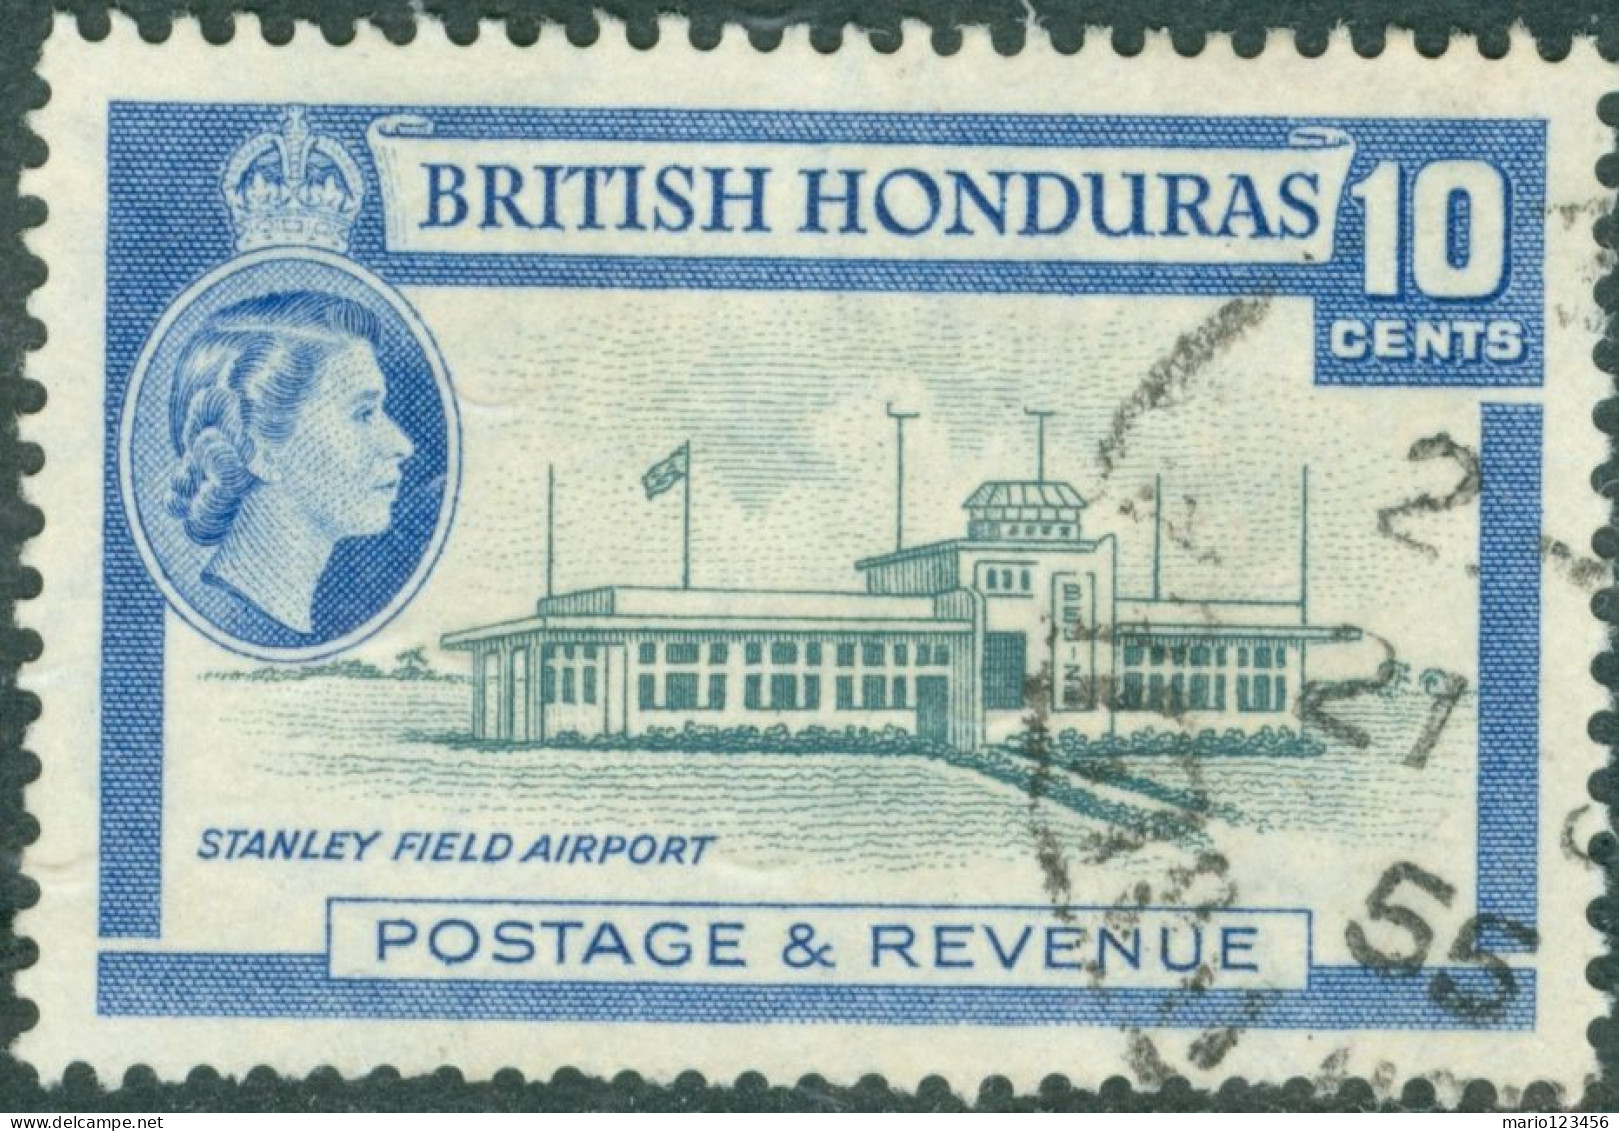 HONDURAS BRITANNICO, BRITISH HONDURAS, PAESAGGI, LANDSCAPE, 1953, FRANCOBOLLI USATI Scott:GB-BZ 149, Yt:GB-BZ 152 - Britisch-Honduras (...-1970)